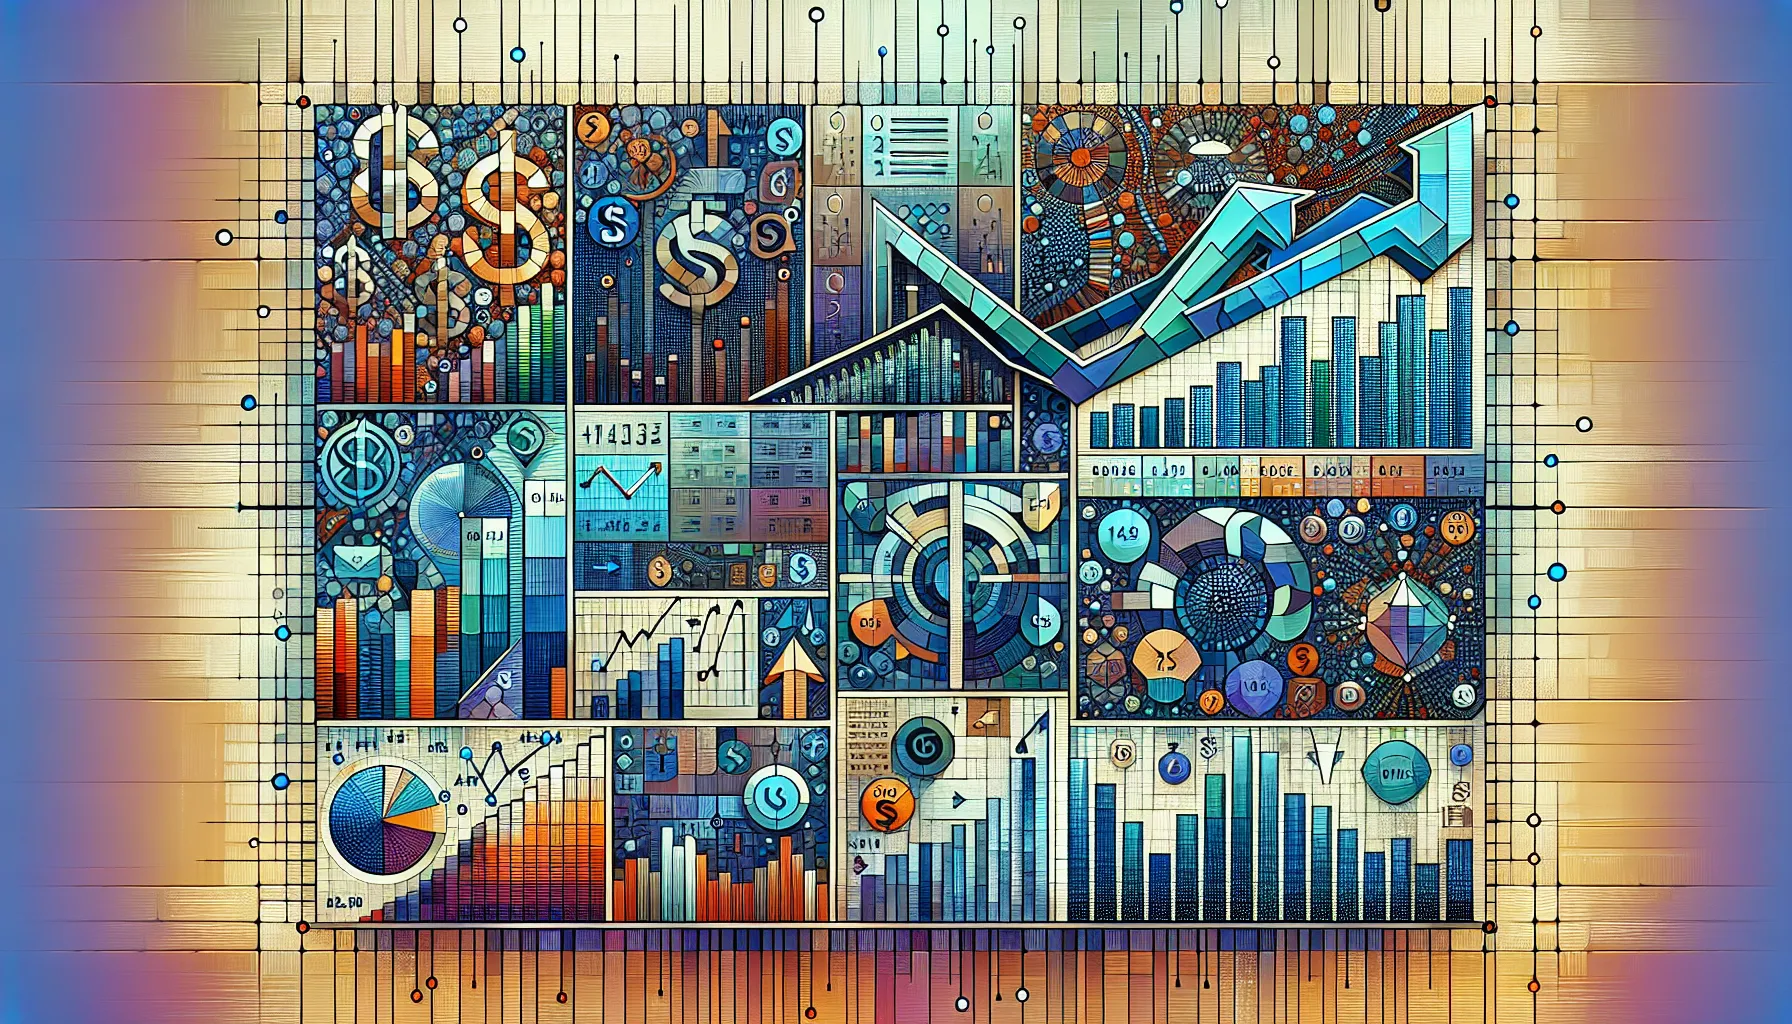 Образ, що показує аналітичні інструменти та графіки юніт економіки, переплетені із символами валют та абстрактними елементами, що відображають рух до прибутковості та зростання.